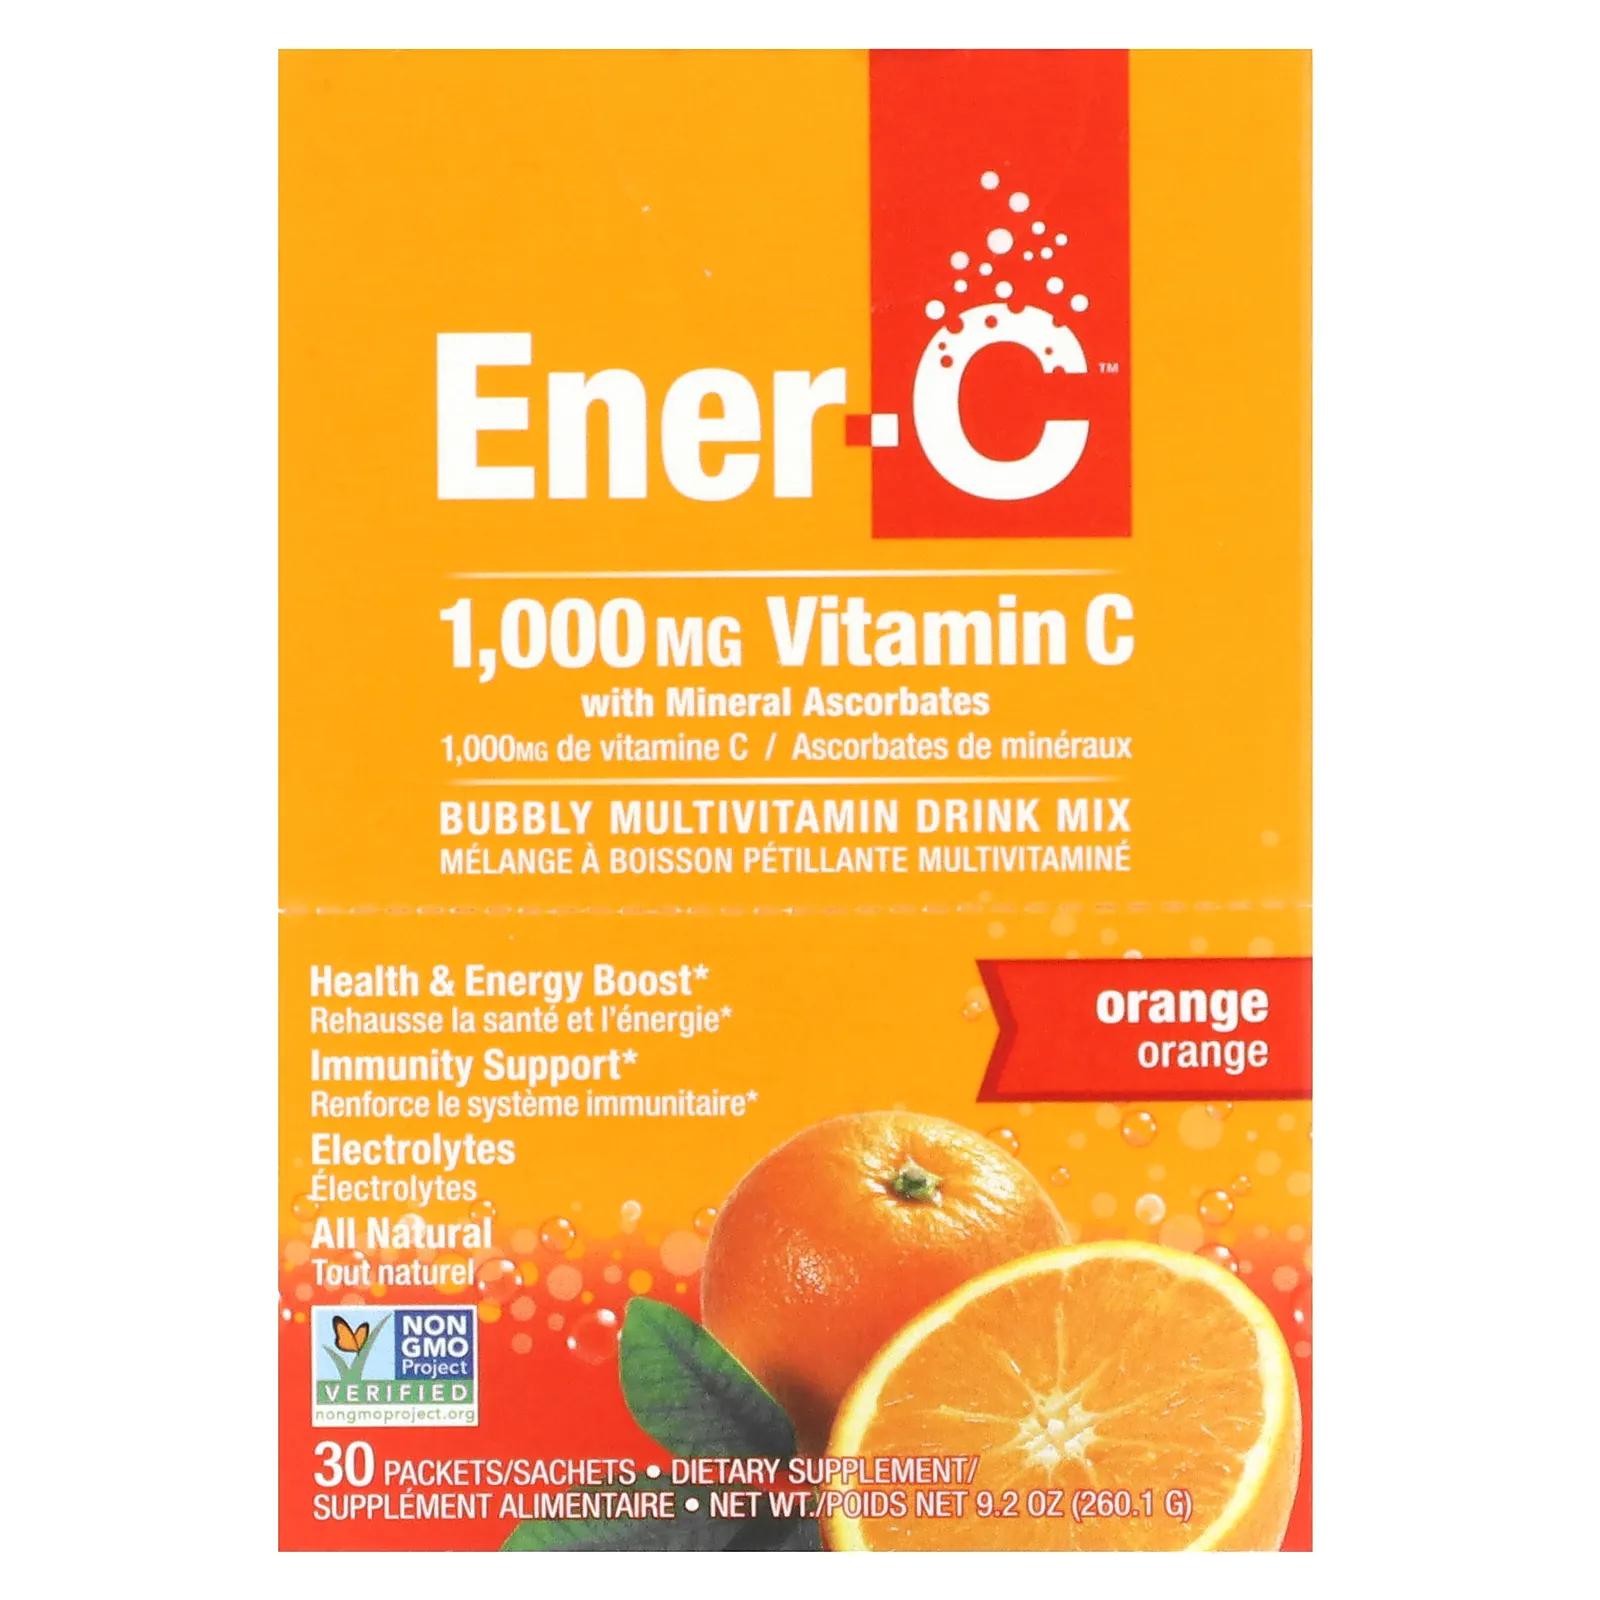 Ener-C Витамин C шипучий растворимый порошок для напитка со вкусом апельсина 30 пакетиков 9,2 унции (260,1 г) mrm шипучий витамин c со вкусом лимона и киви 1000 мг 30 пакетиков 6 г 0 21 унции каждый